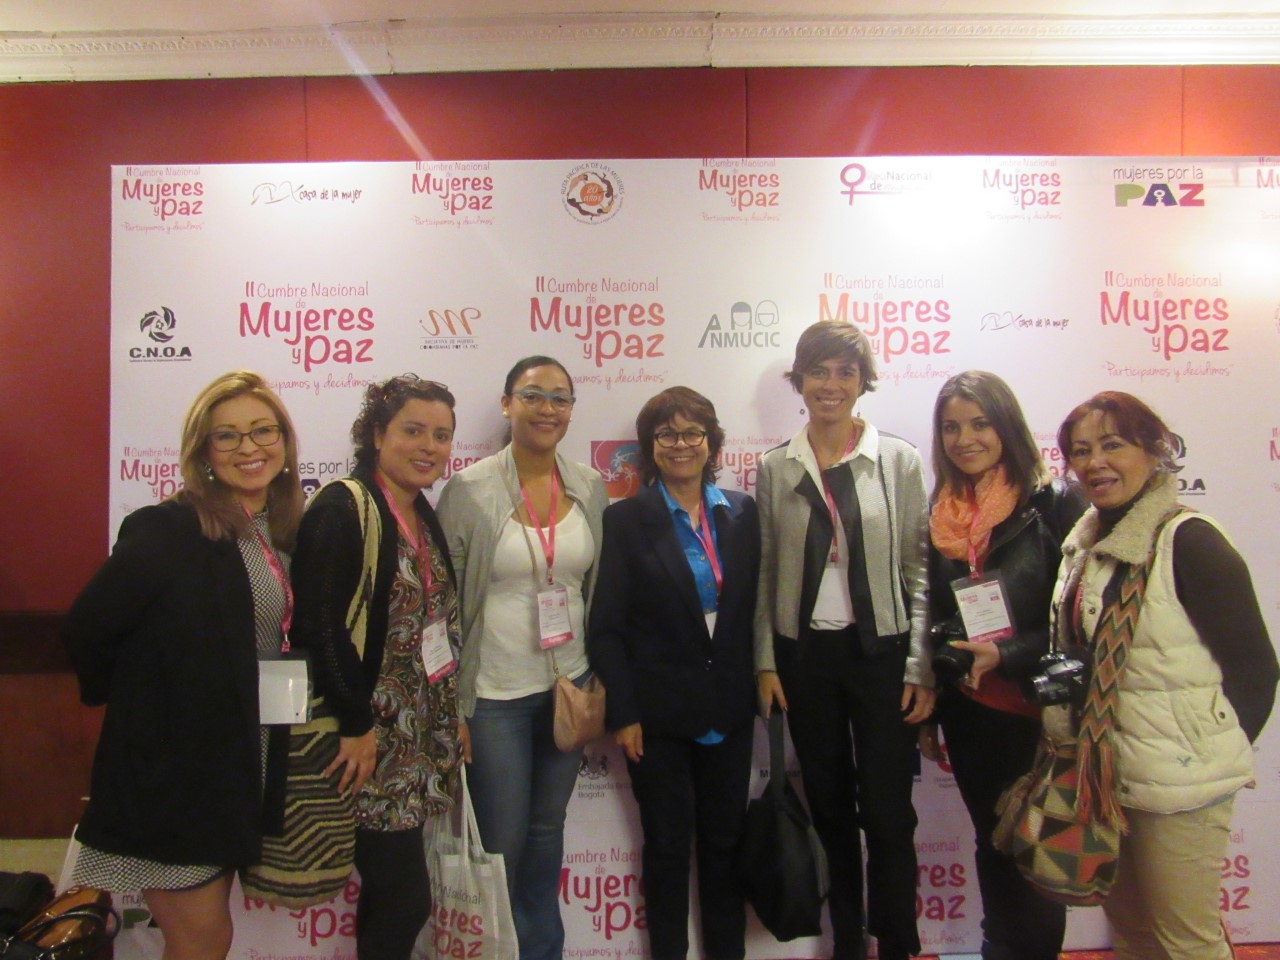 La red de periodistas con Visión de género, presente en la II cumbre nacional de mujeres y paz .